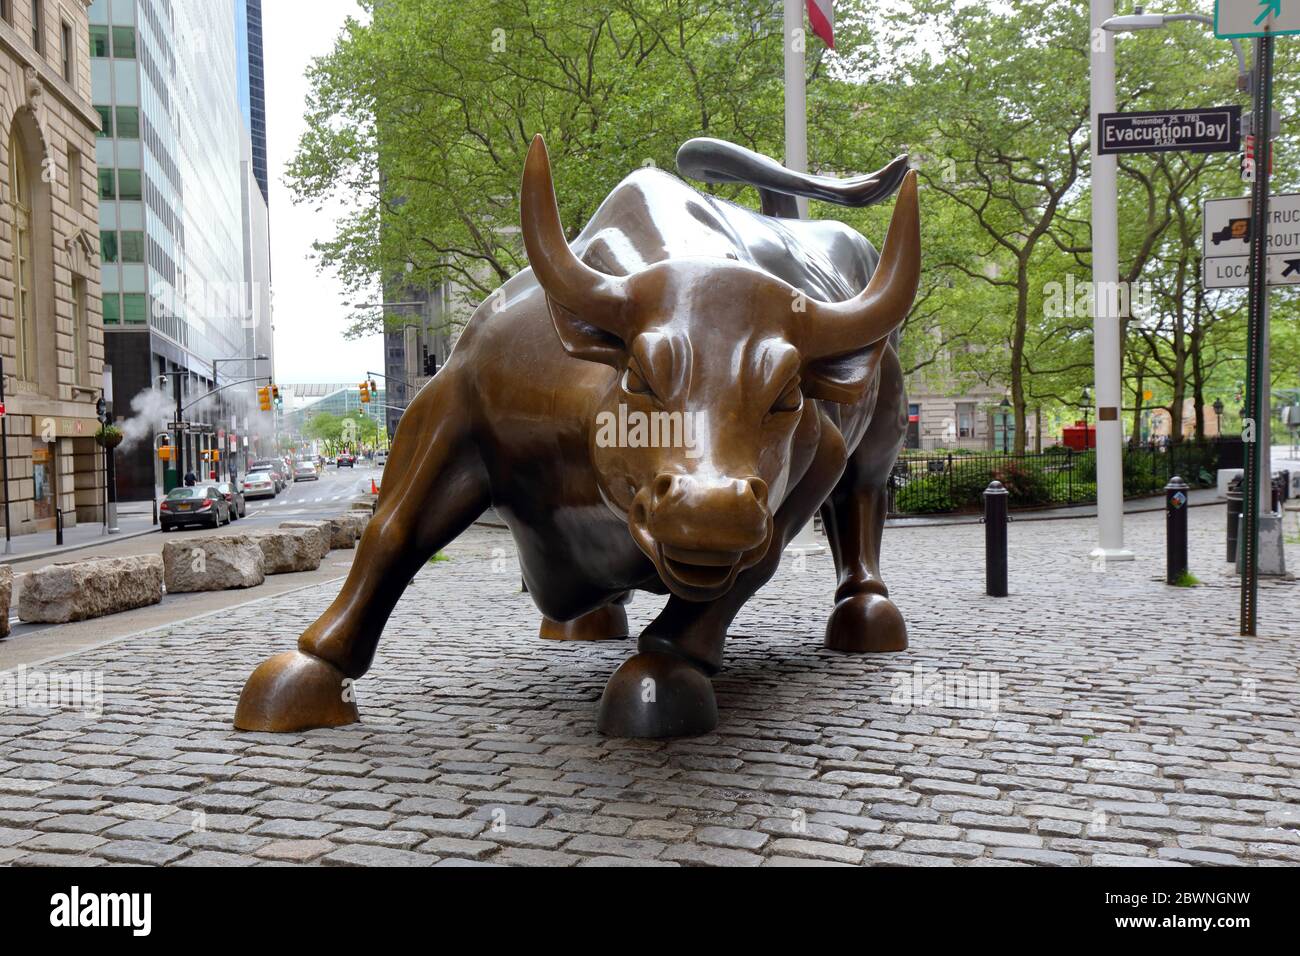 Chargement Bull par Arturo Di Modica. Une sculpture en bronze qui représente Wall Street, située à Bowling Green, Manhattan, New York. Personne Banque D'Images